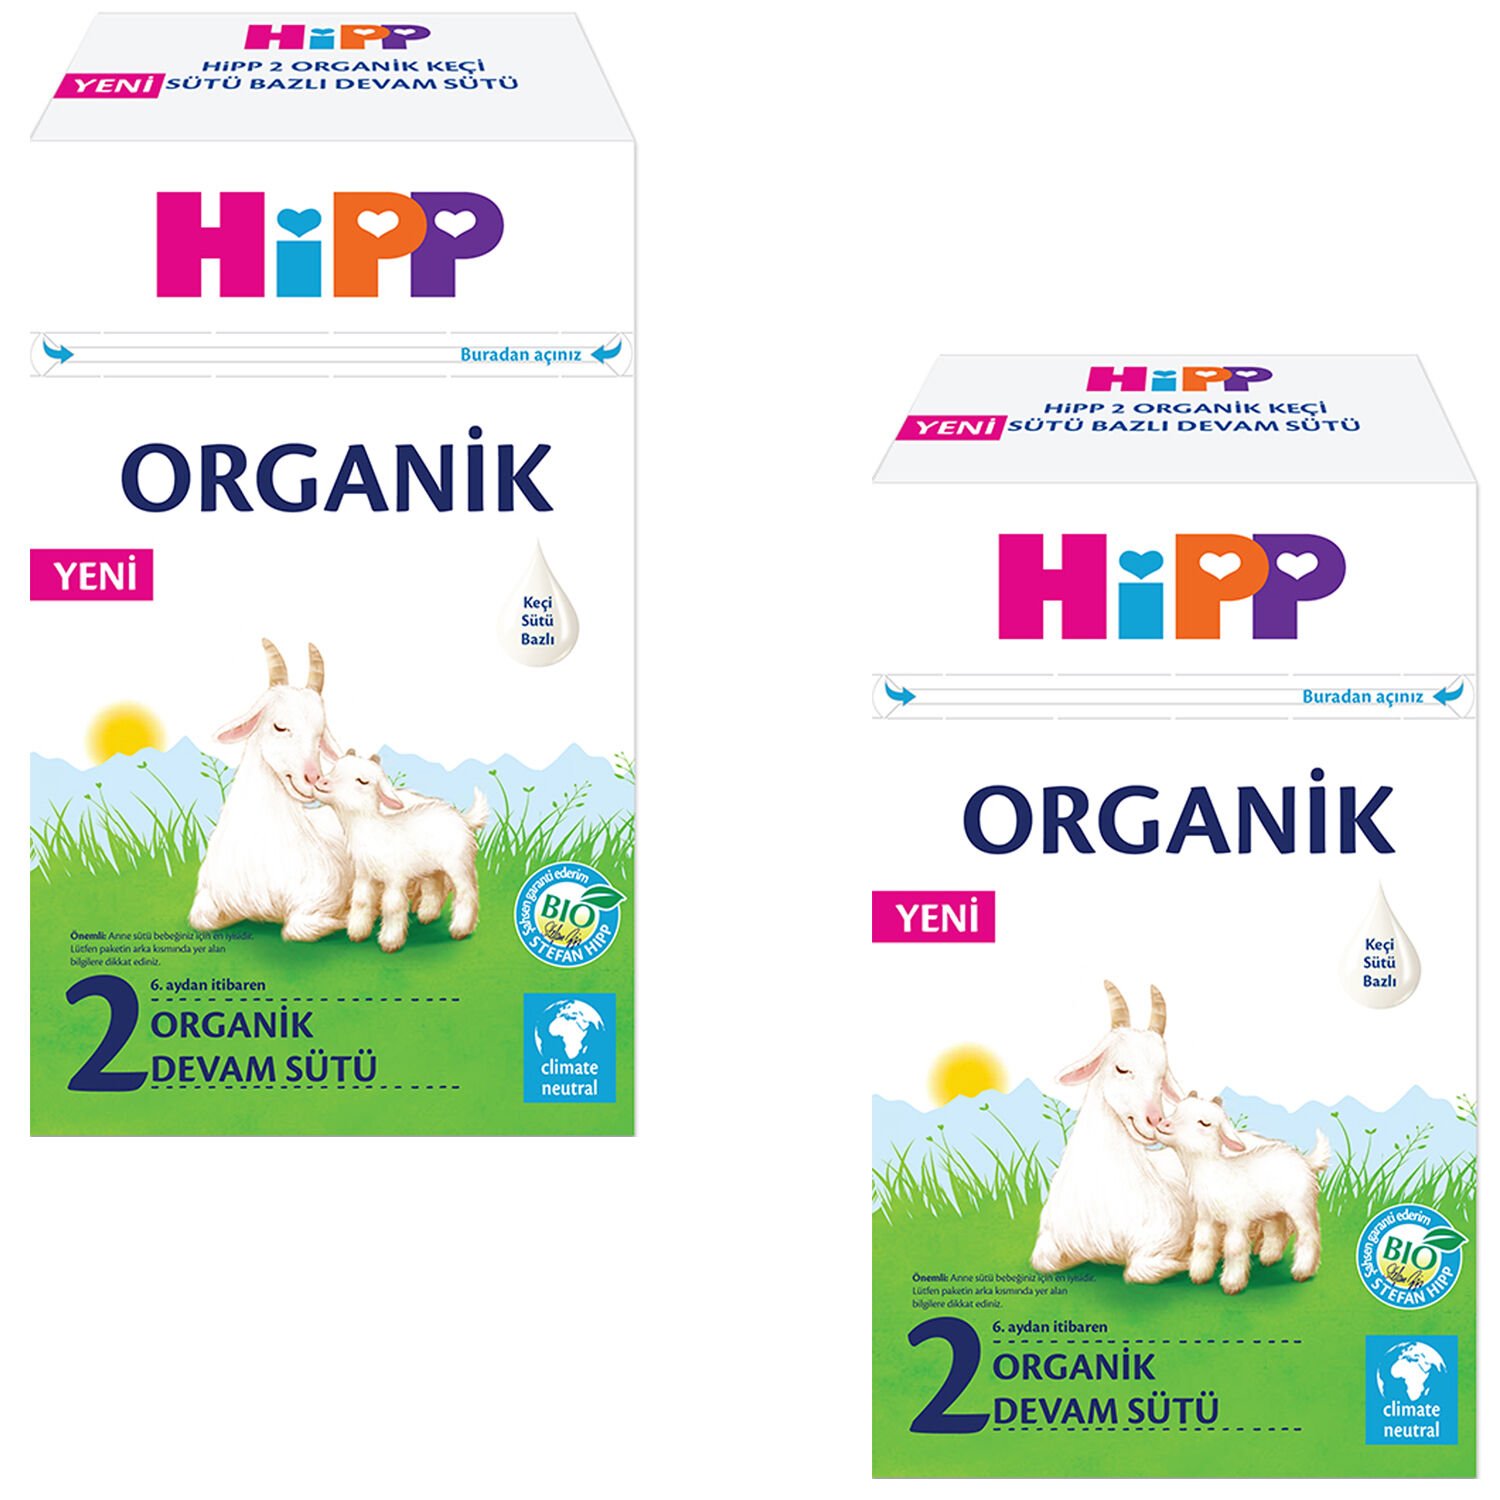 Hipp 2 Organik Keçi Sütü Bazlı Devam Sütü 400 gr 2 ADET